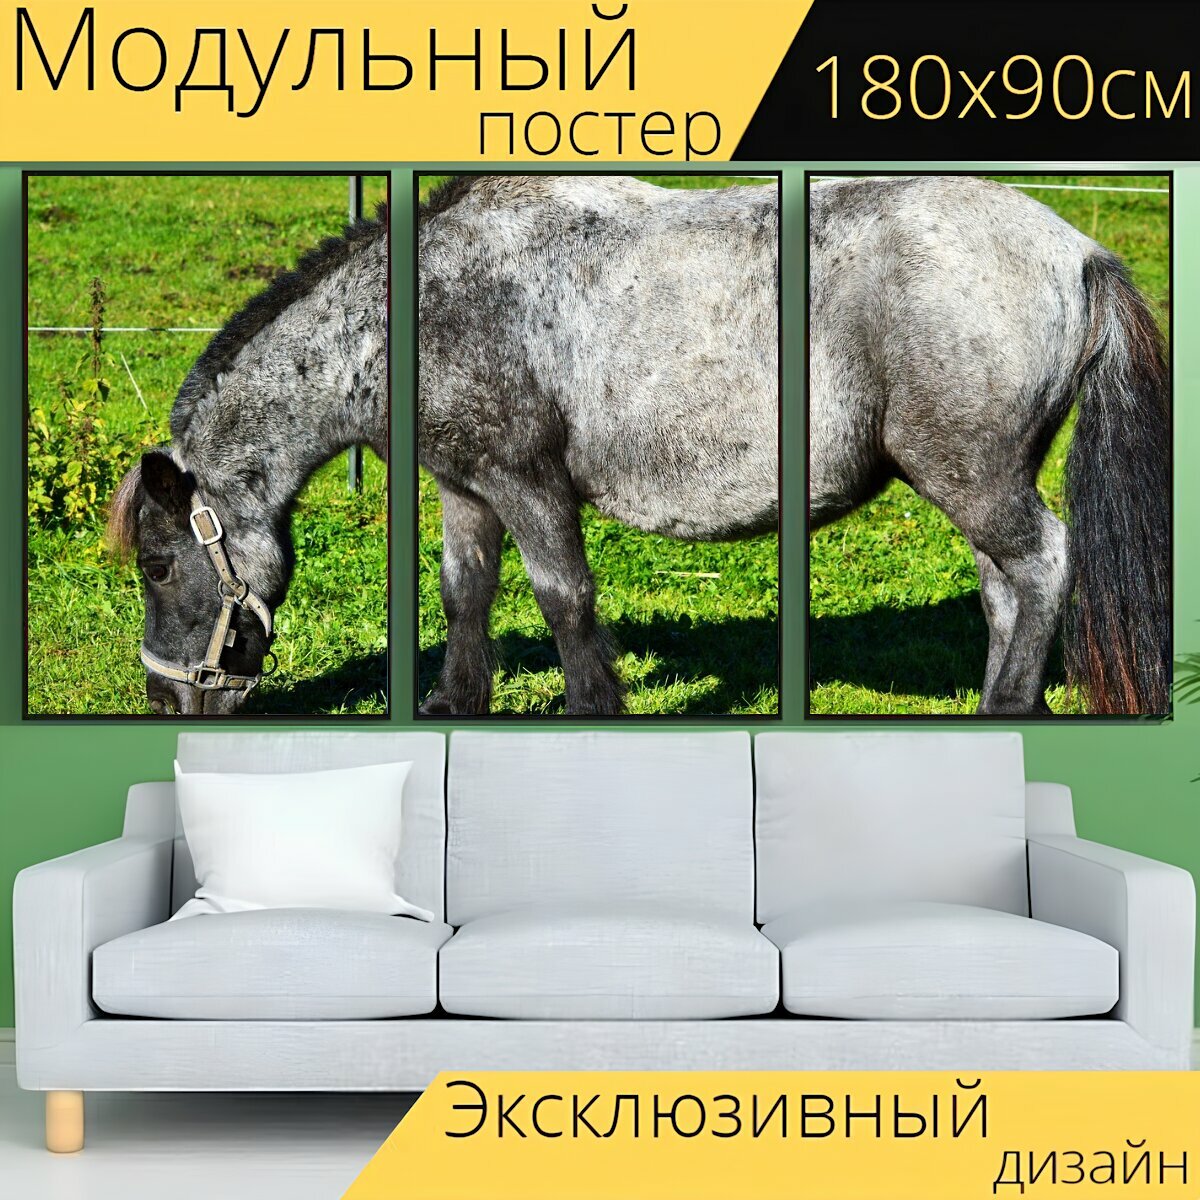 Модульный постер "Пони, ни одна лошадь, лошадь" 180 x 90 см. для интерьера